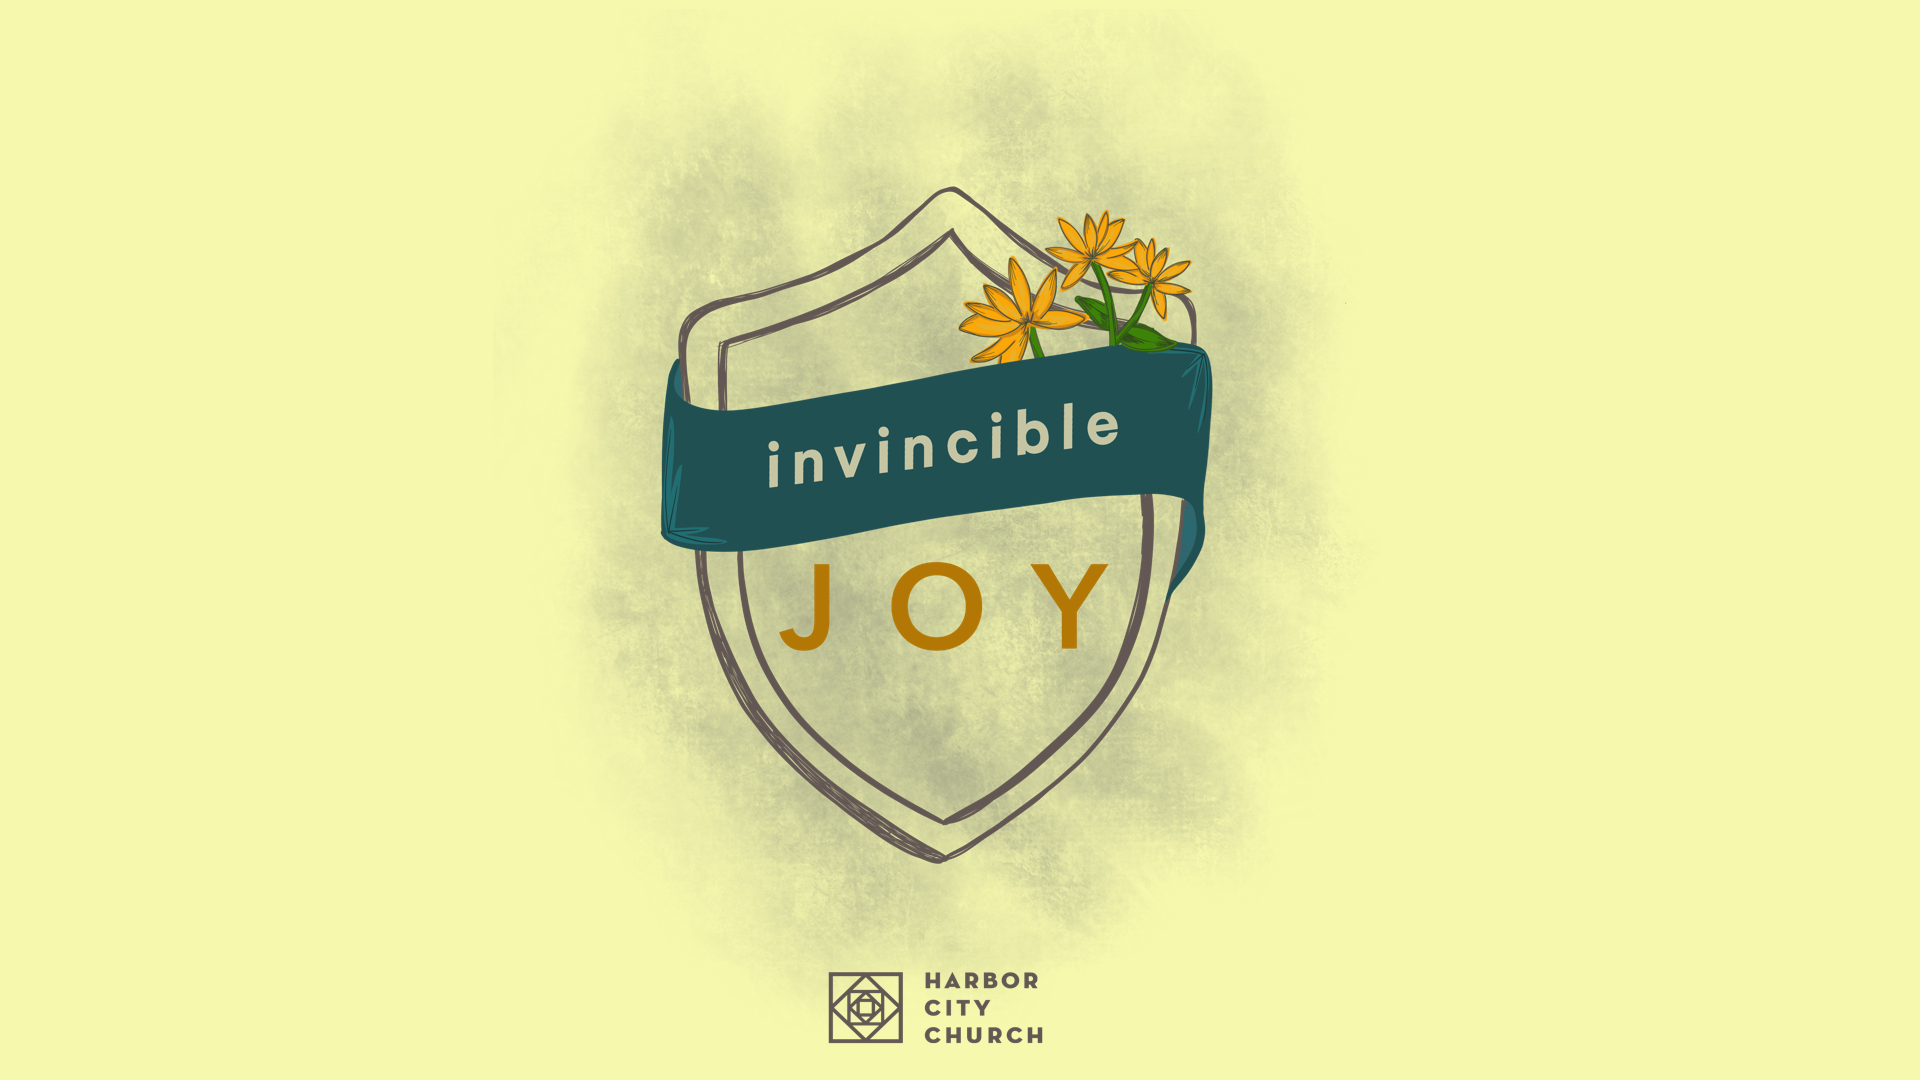 Invincible Joy